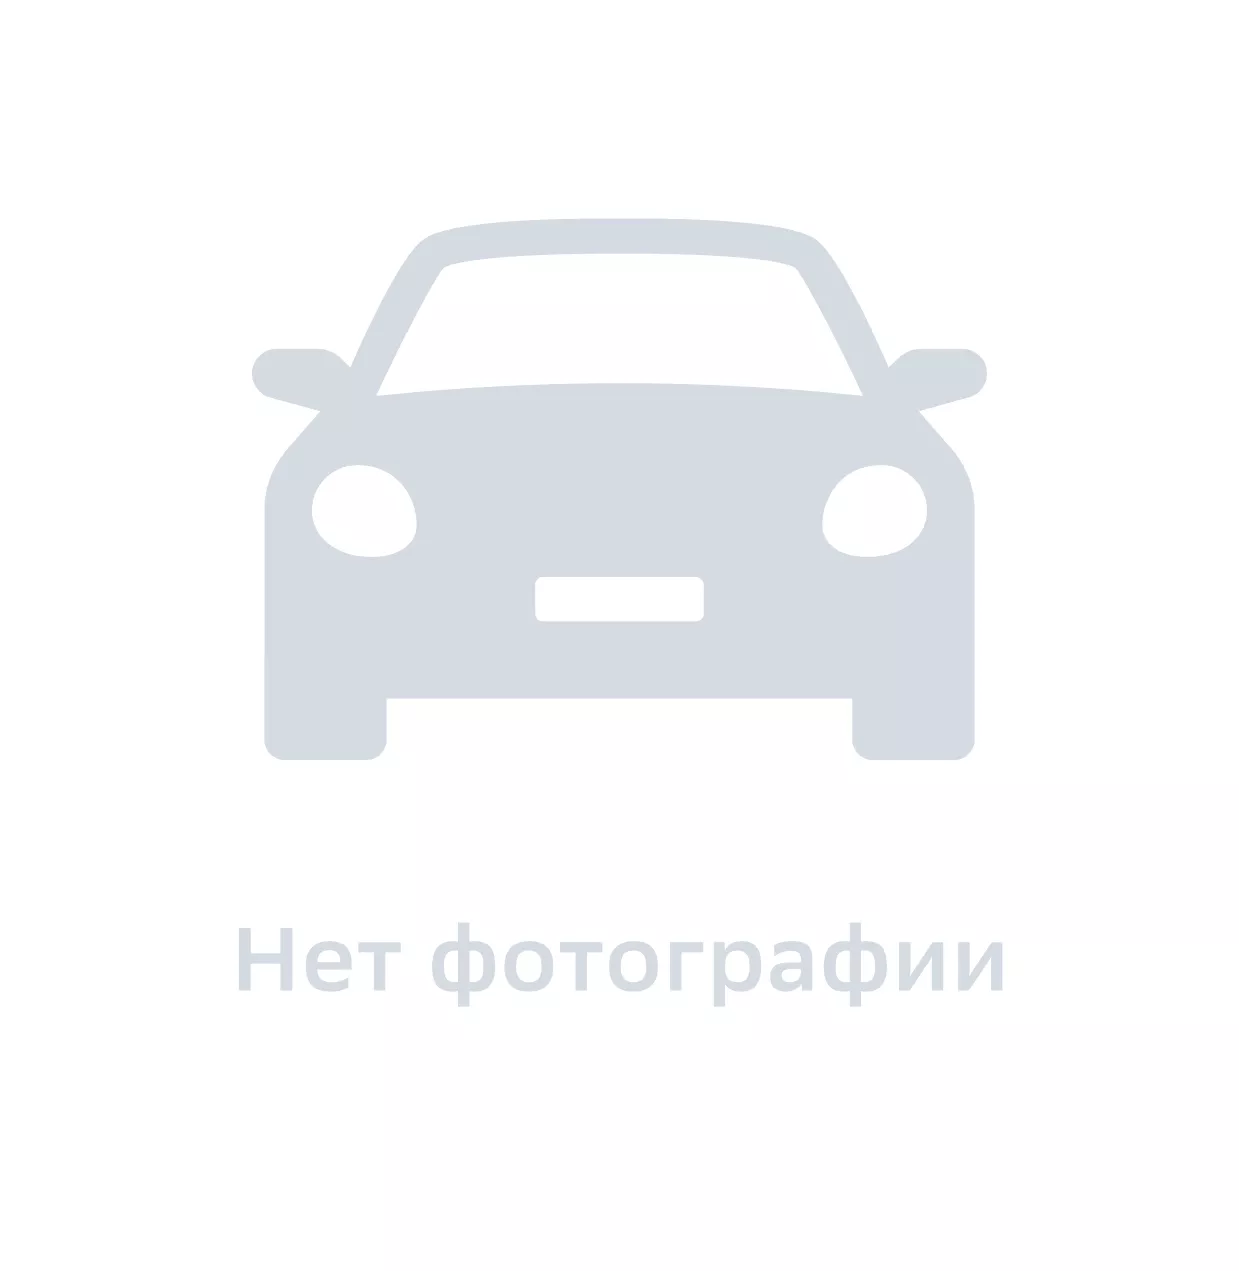 Колпак колеса, Hyundai-KIA, арт. 529602E610, цена за 1 шт.